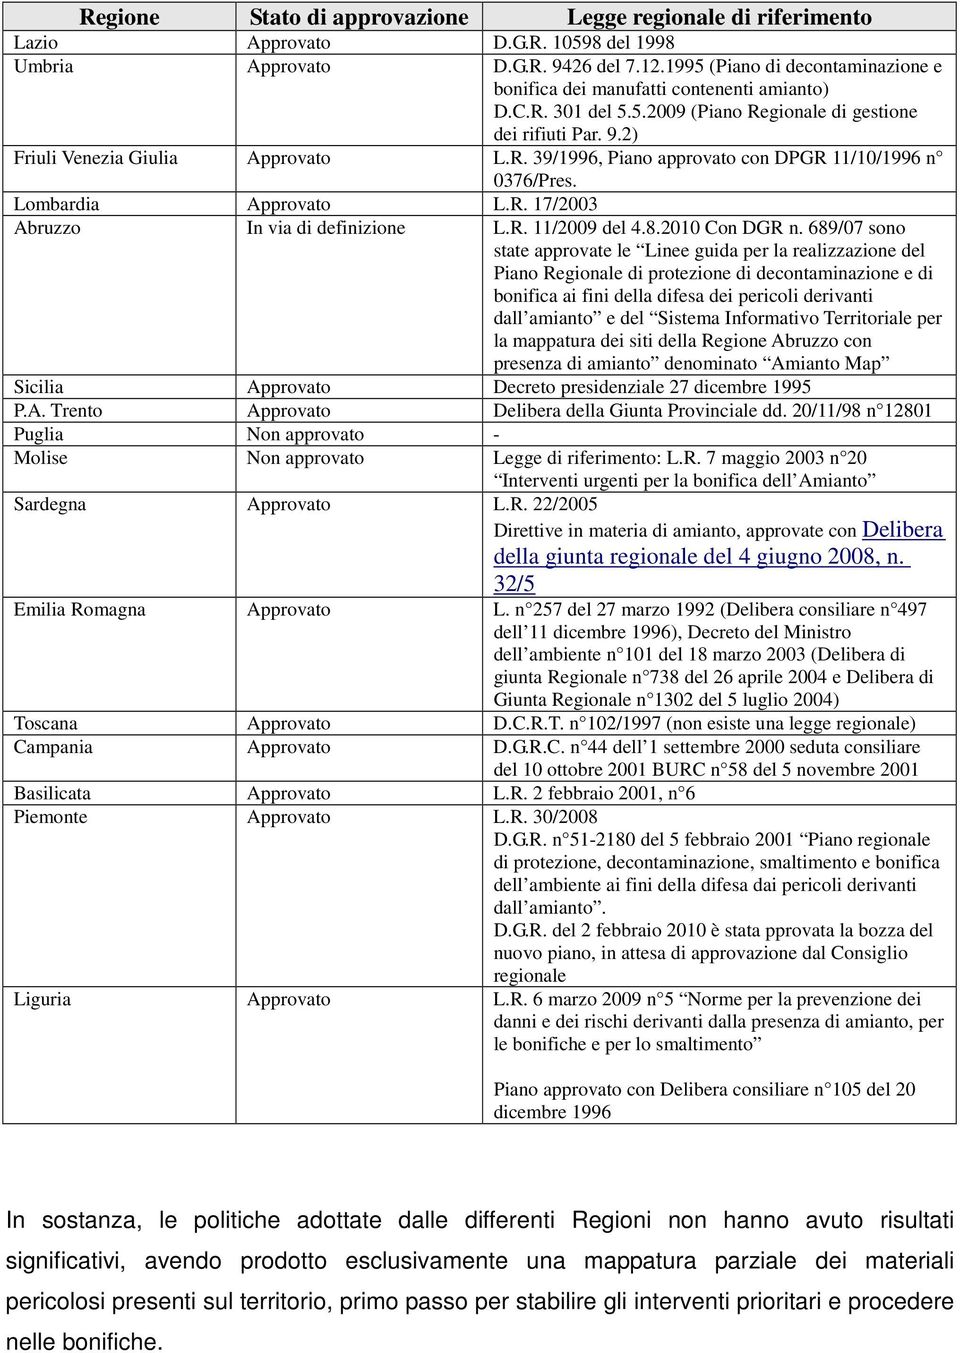 Lombardia Approvato L.R. 17/2003 Abruzzo In via di definizione L.R. 11/2009 del 4.8.2010 Con DGR n.